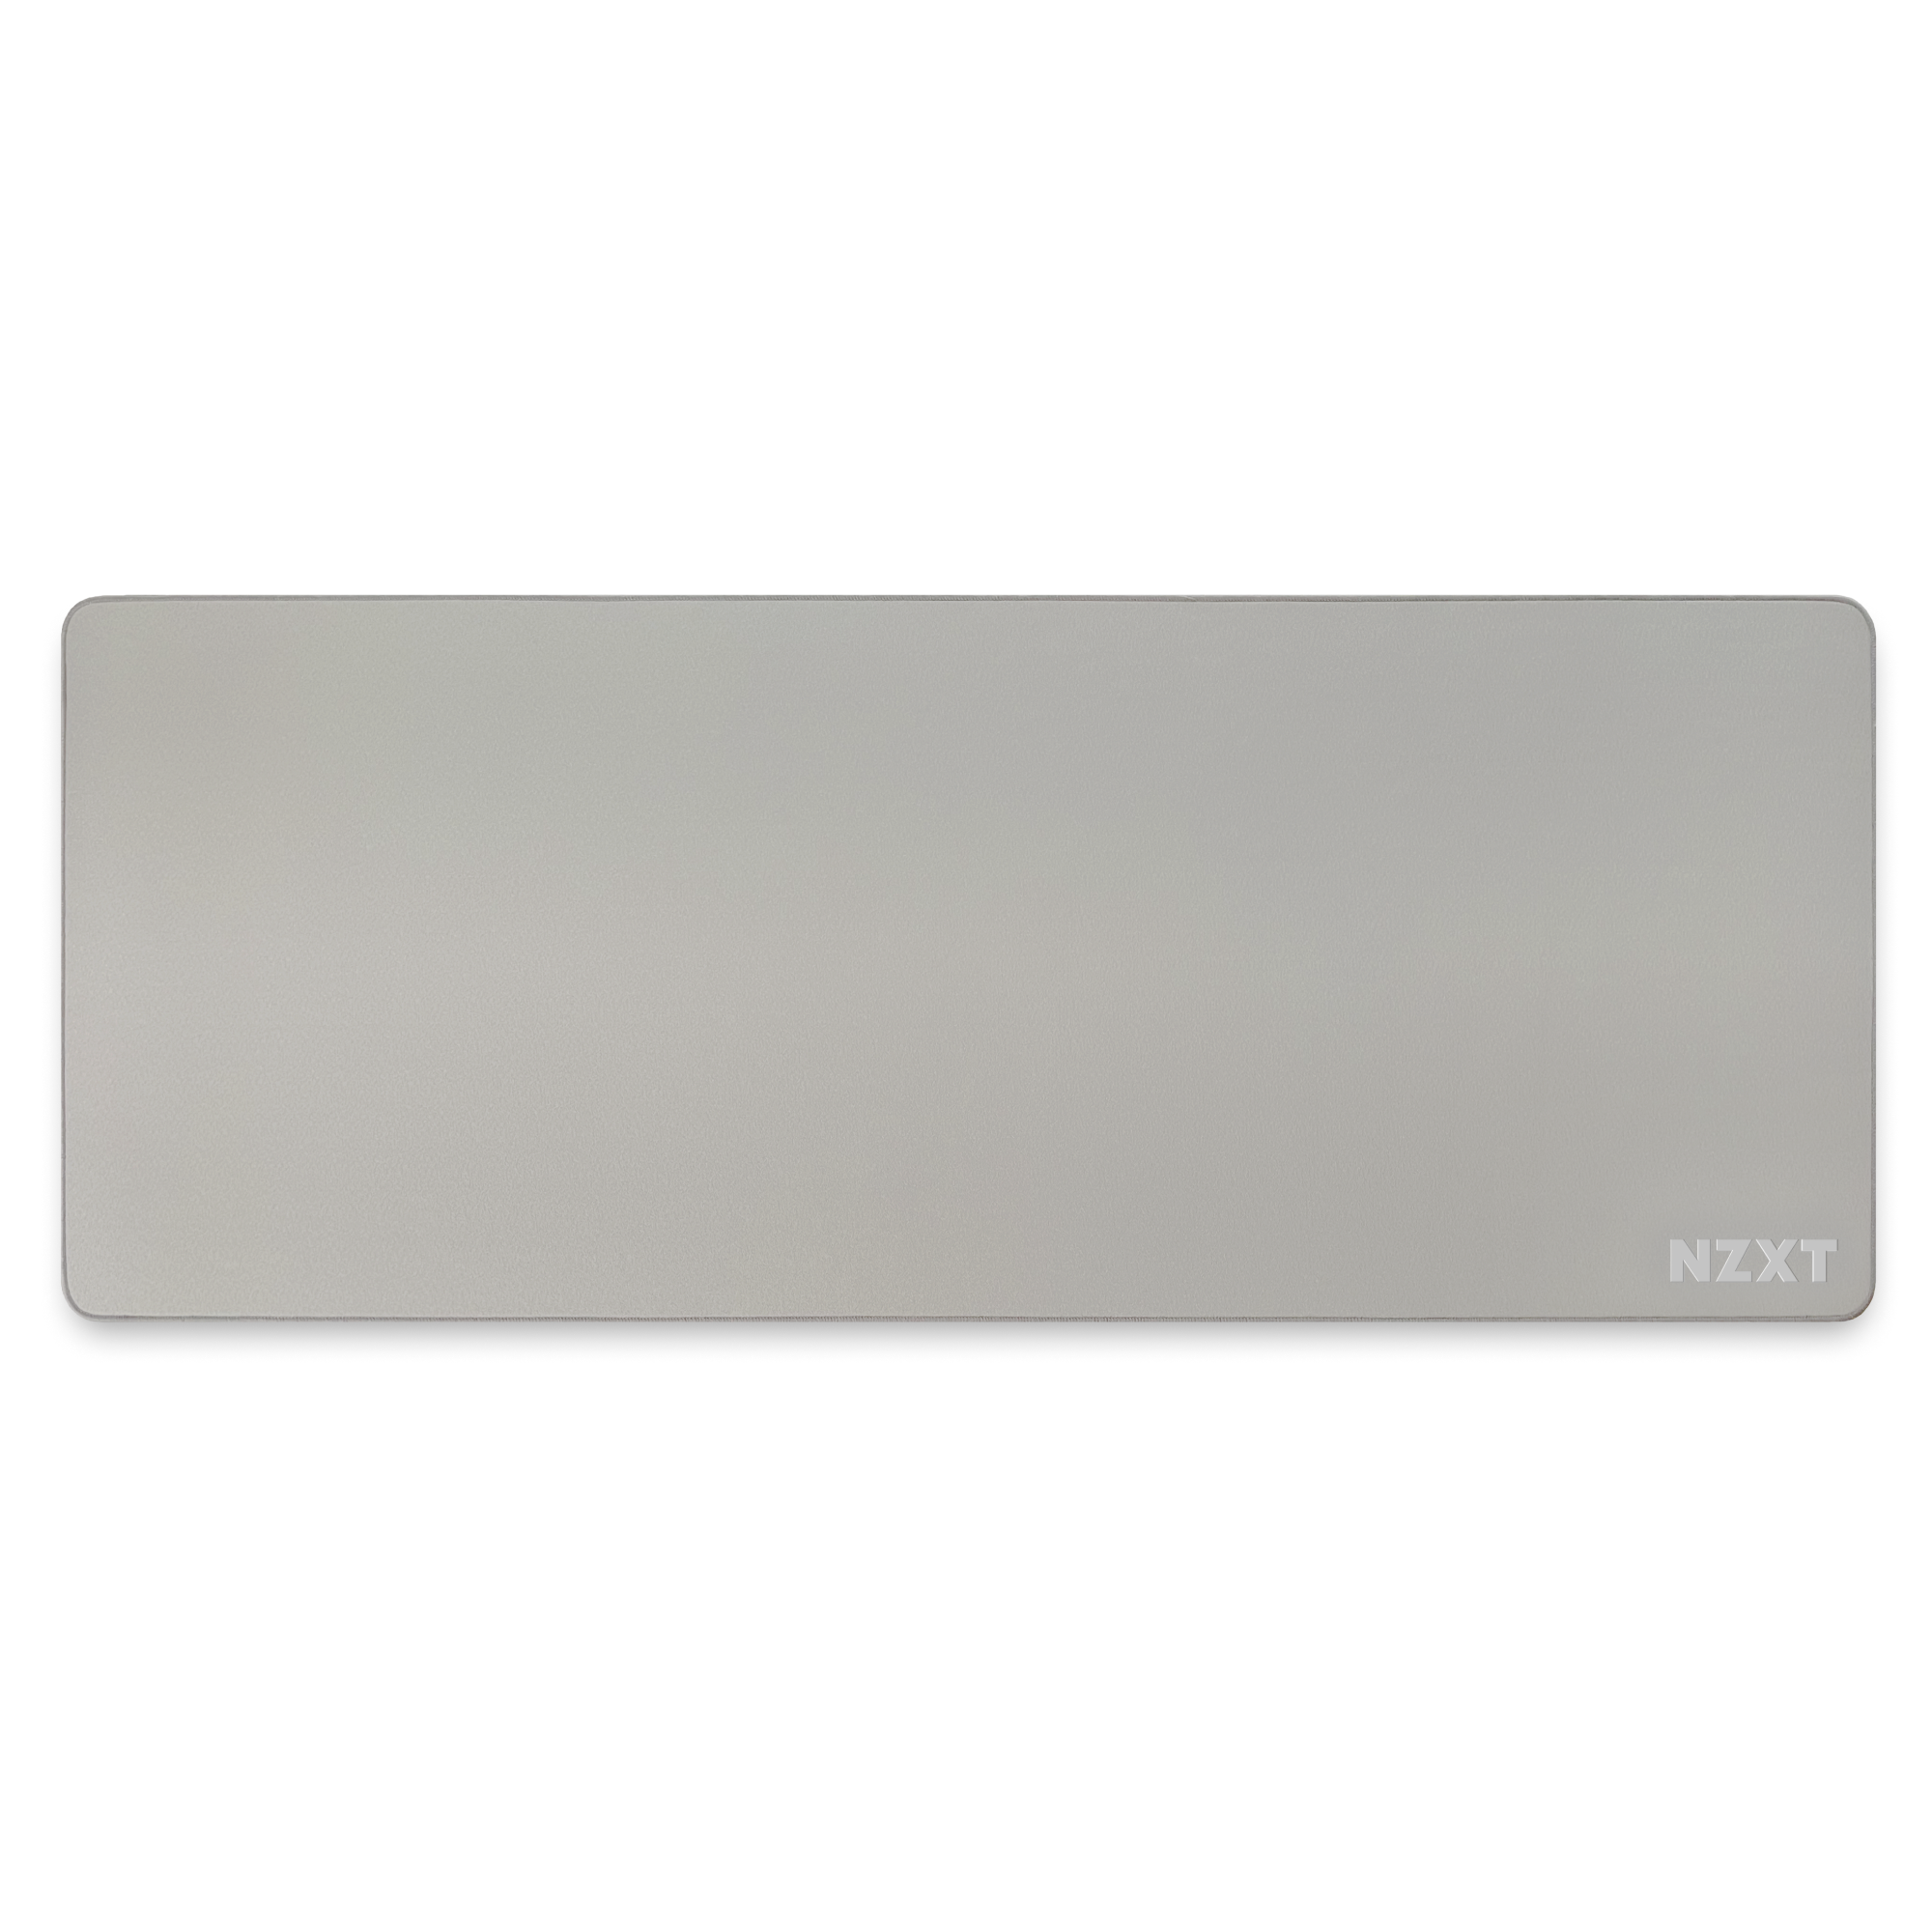 NZXT MXP700 White Tapis de souris NZXT Maroc